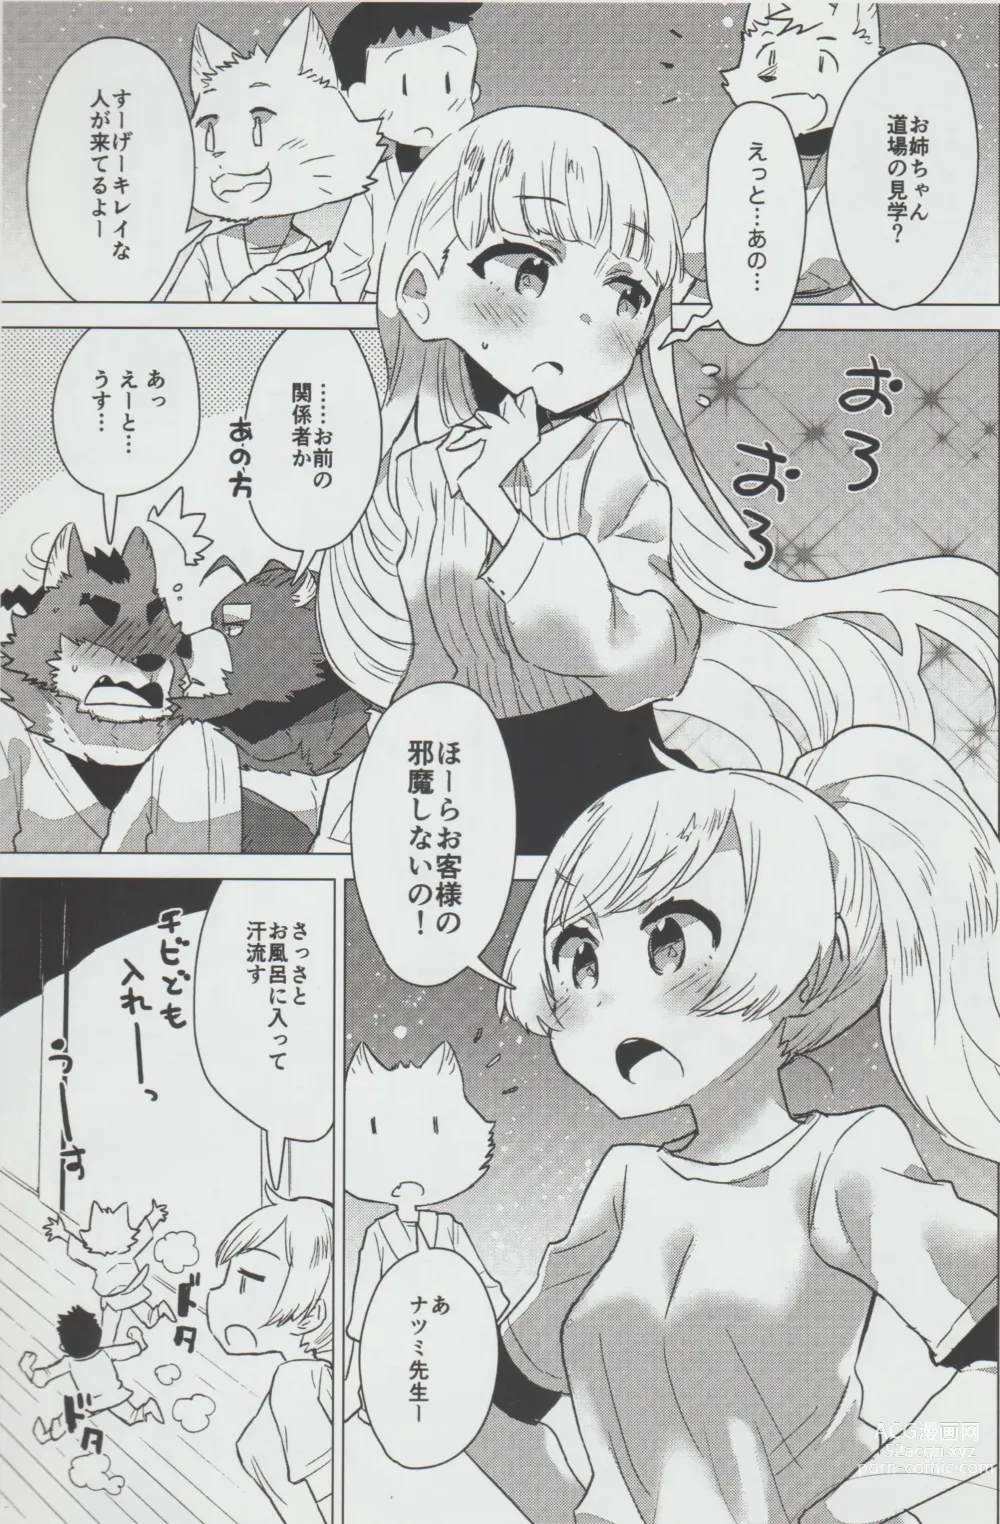 Page 4 of doujinshi Mihoshi Ginza Shopping Street Kaihoushi vol. 04